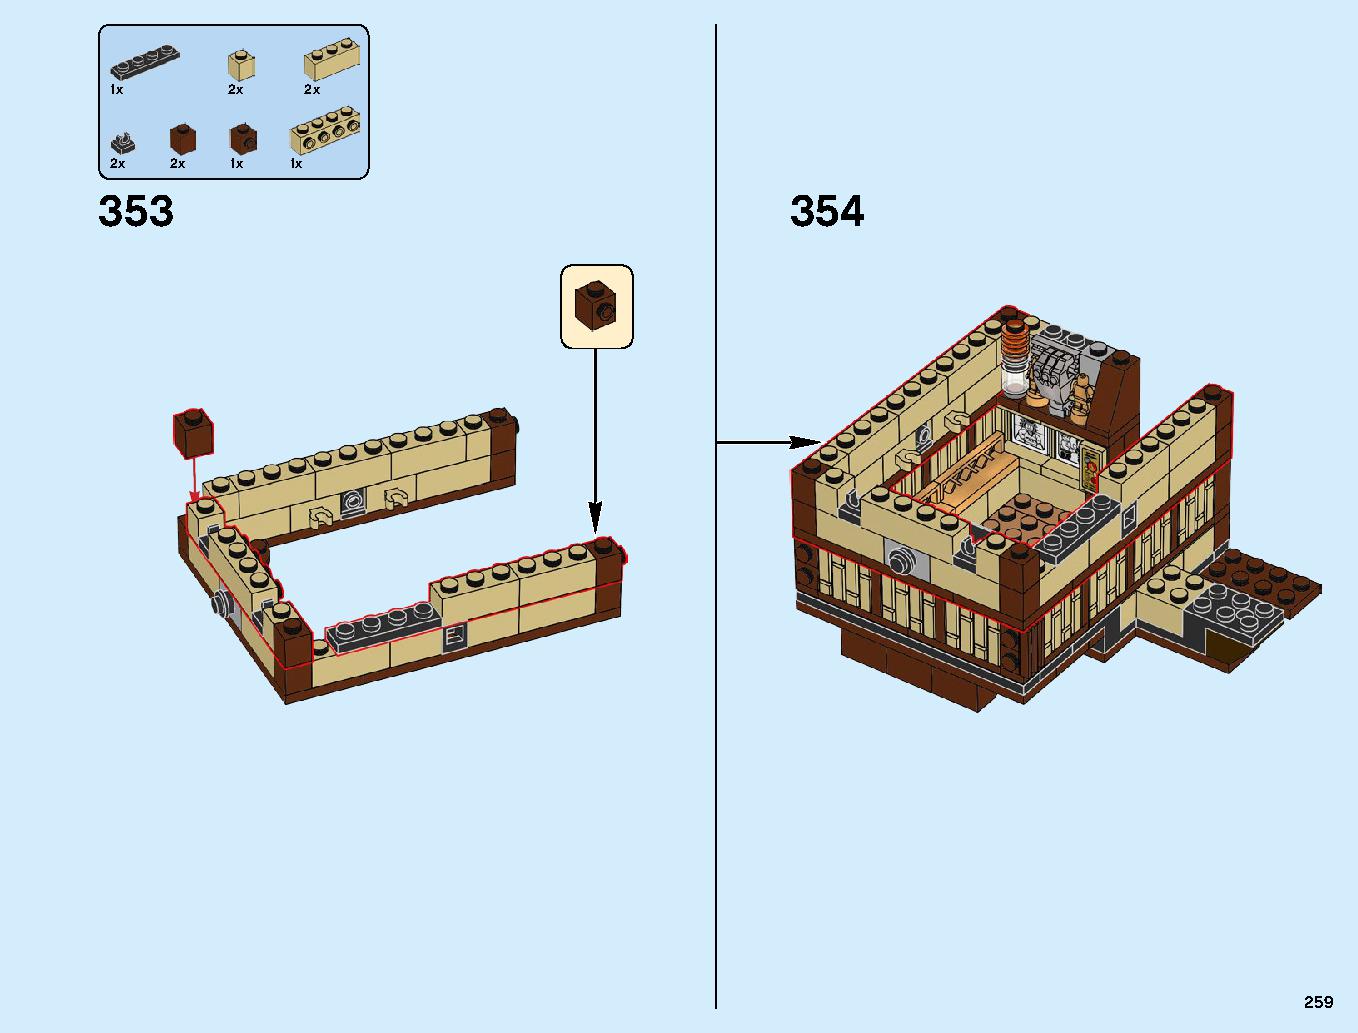 ニンジャゴーシティ・ポートパーク 70657 レゴの商品情報 レゴの説明書・組立方法 259 page